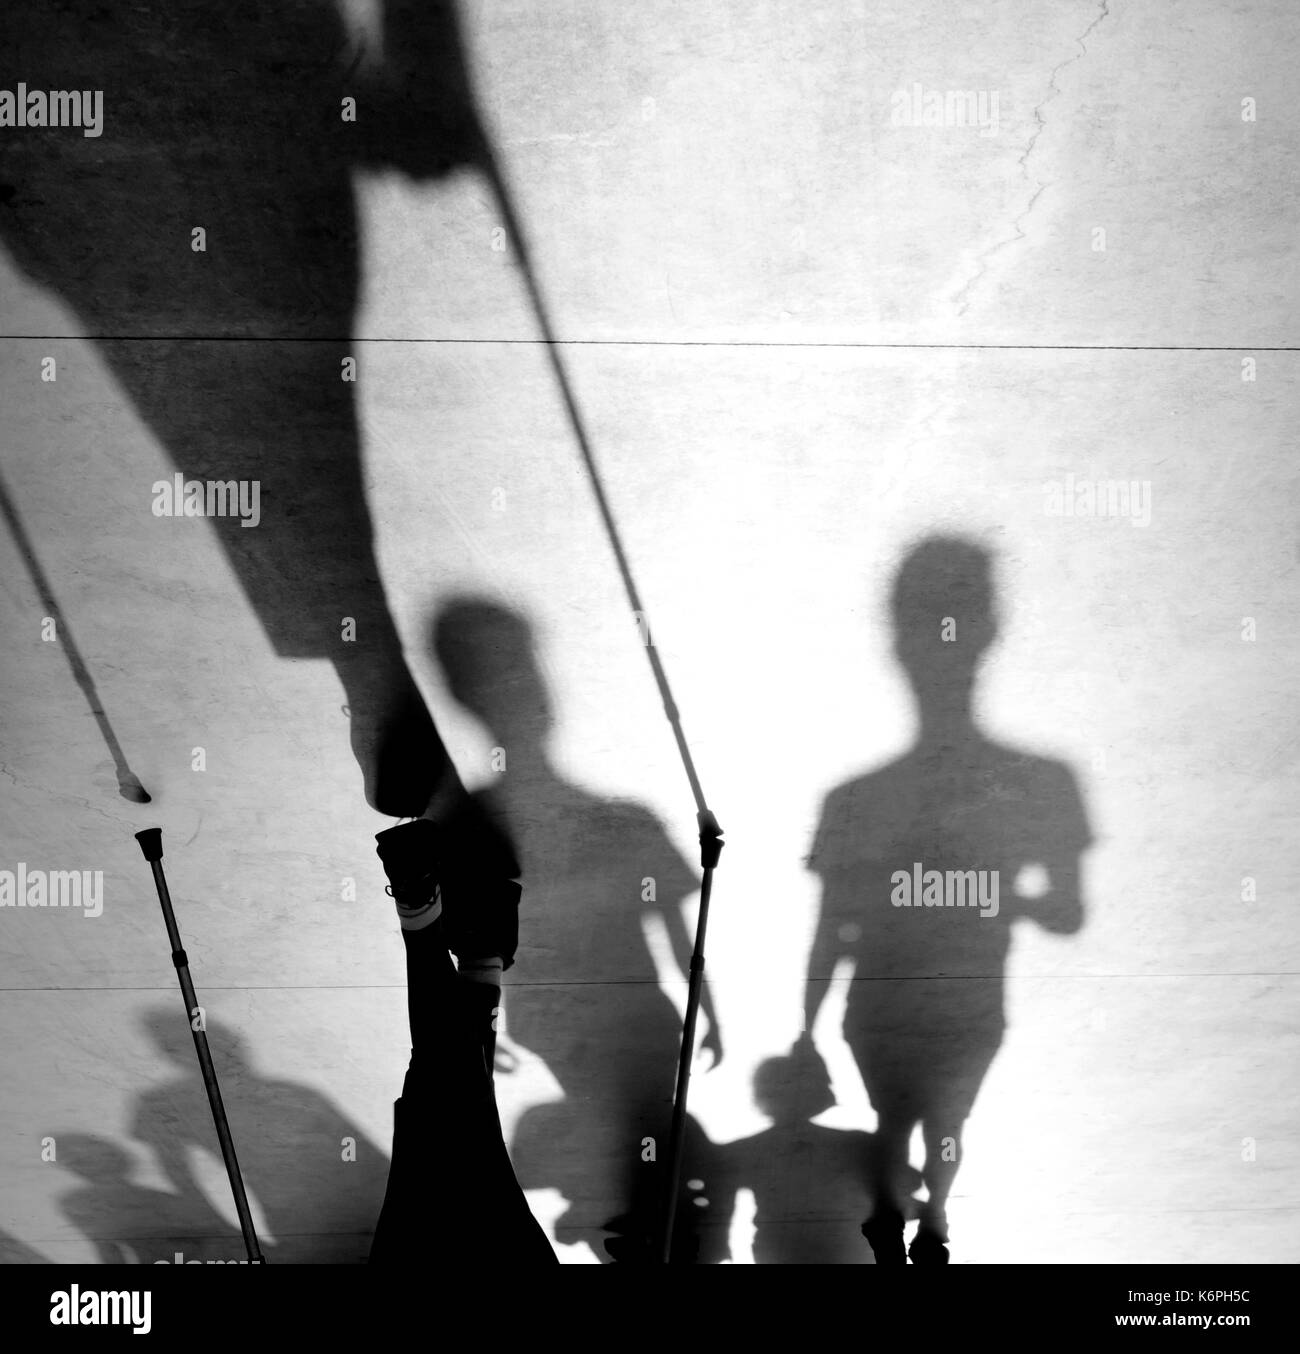 Sfocata ombra silhouette di una persona anziana e camminare con i bastoncini nordic bastoni sul marciapiede e giovani a piedi dietro, in bianco e nero Foto Stock